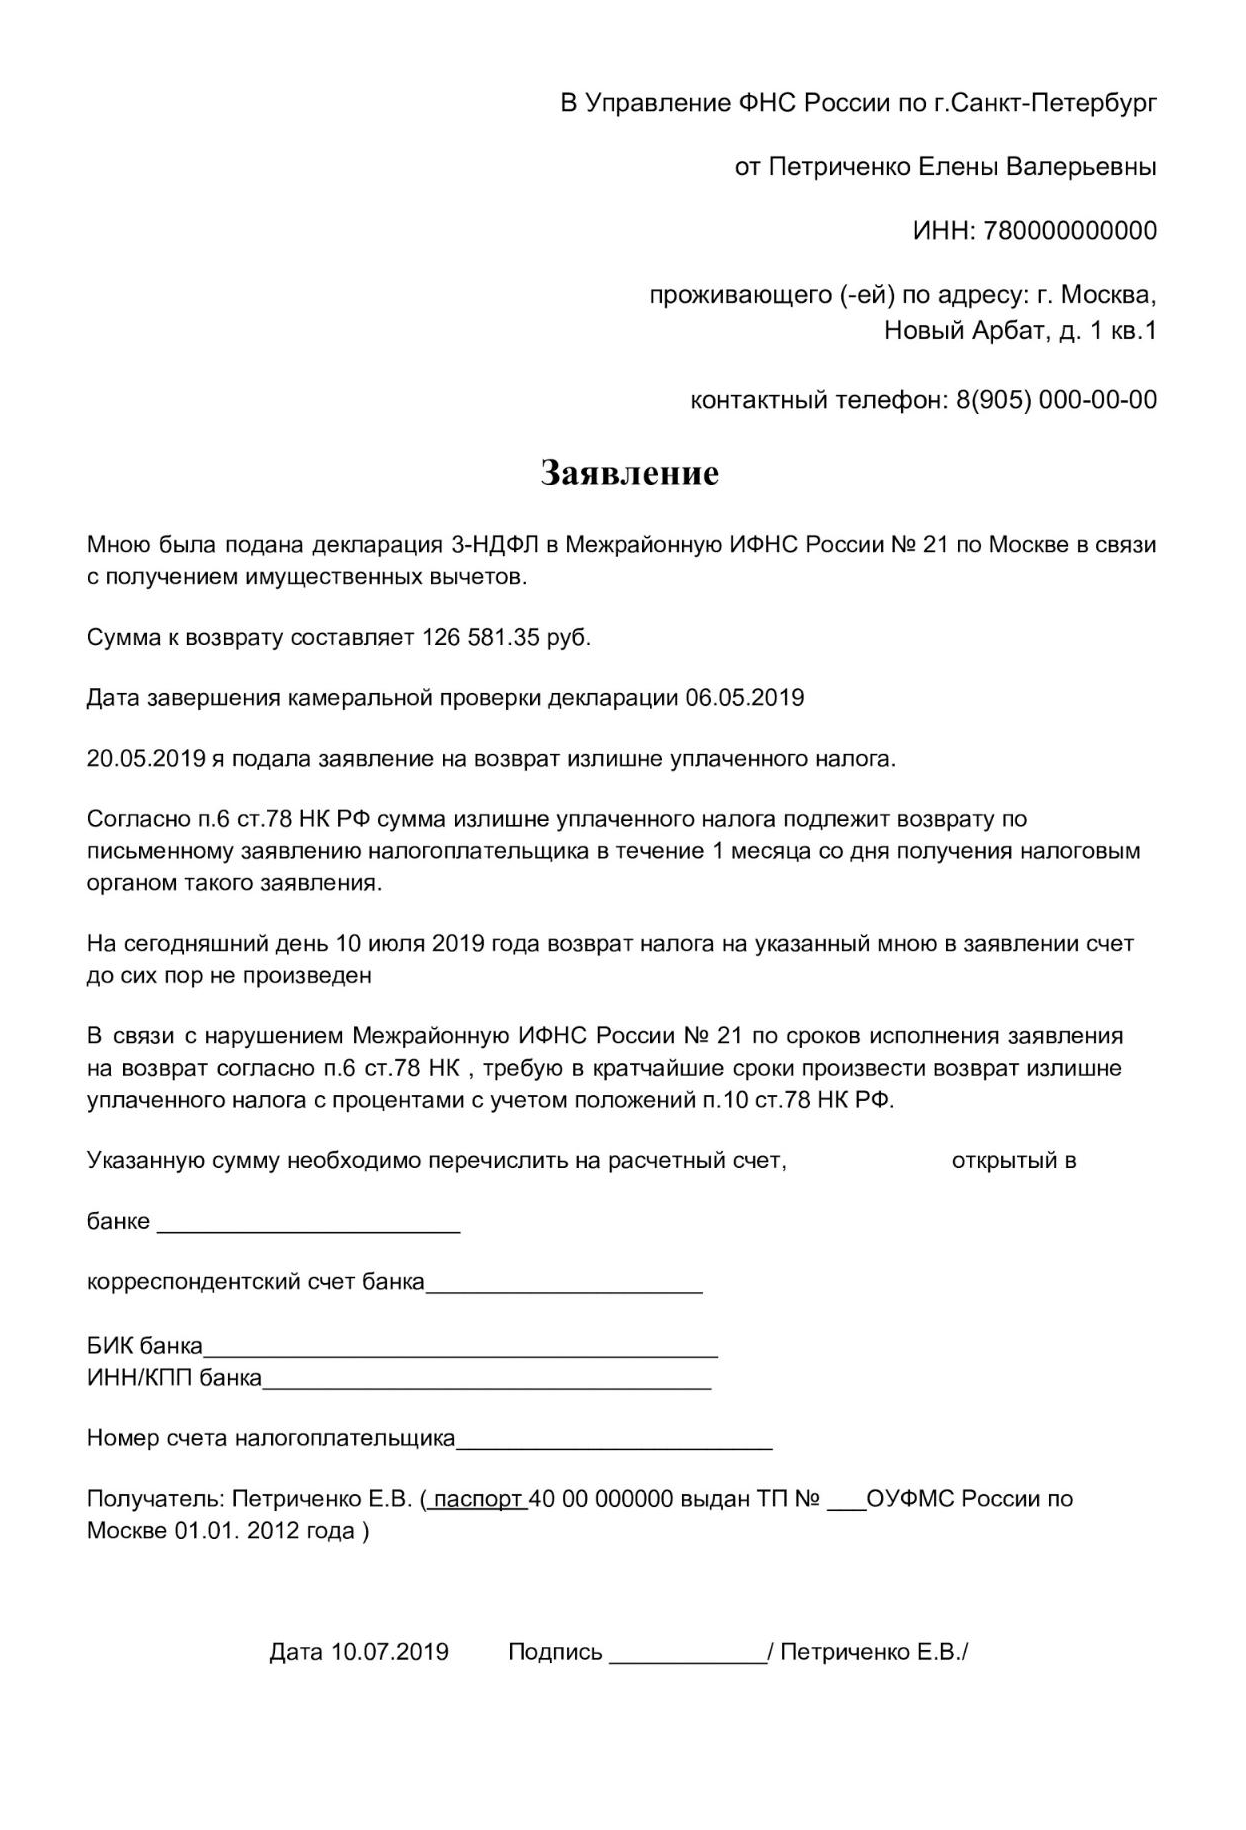 Я хочу получить налоговое уведомление и квитанцию | ФНС России | 77 город Москва